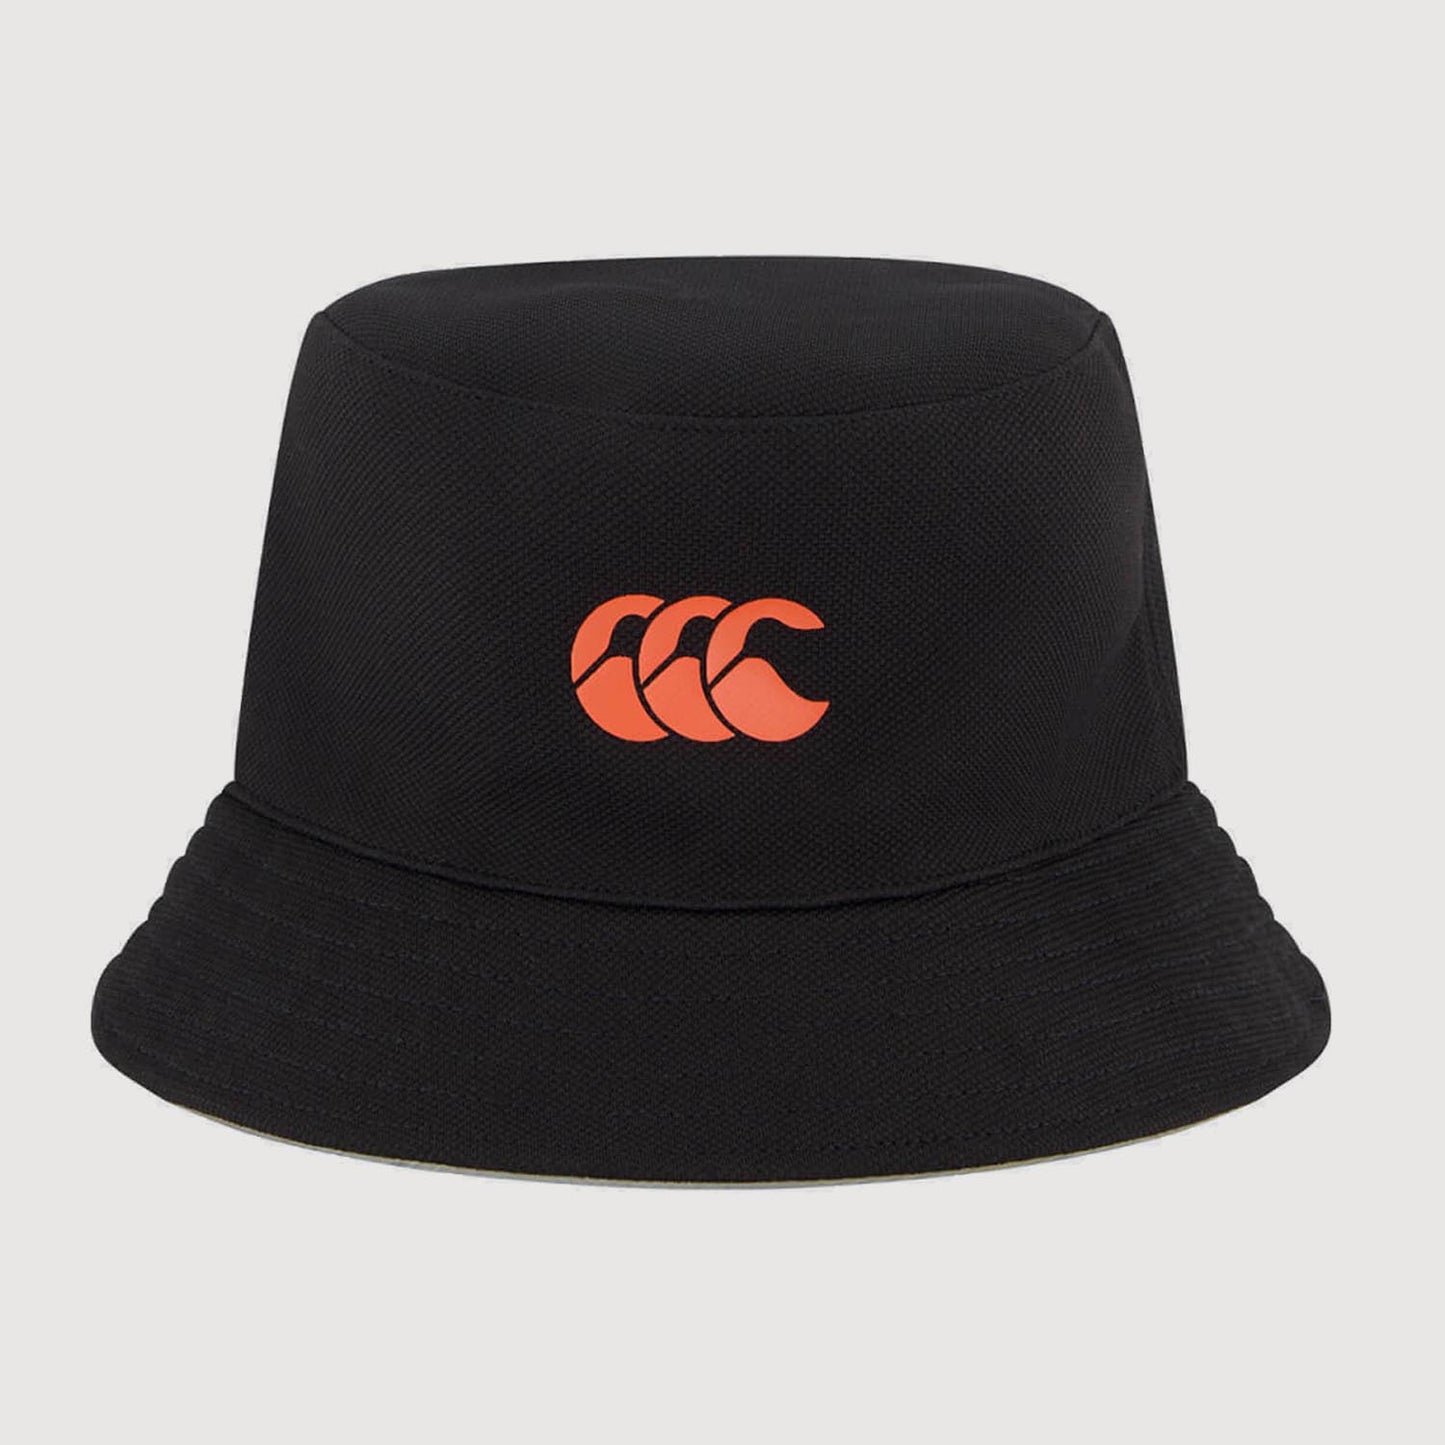 BLACKCAPS Supporters Bucket Hat